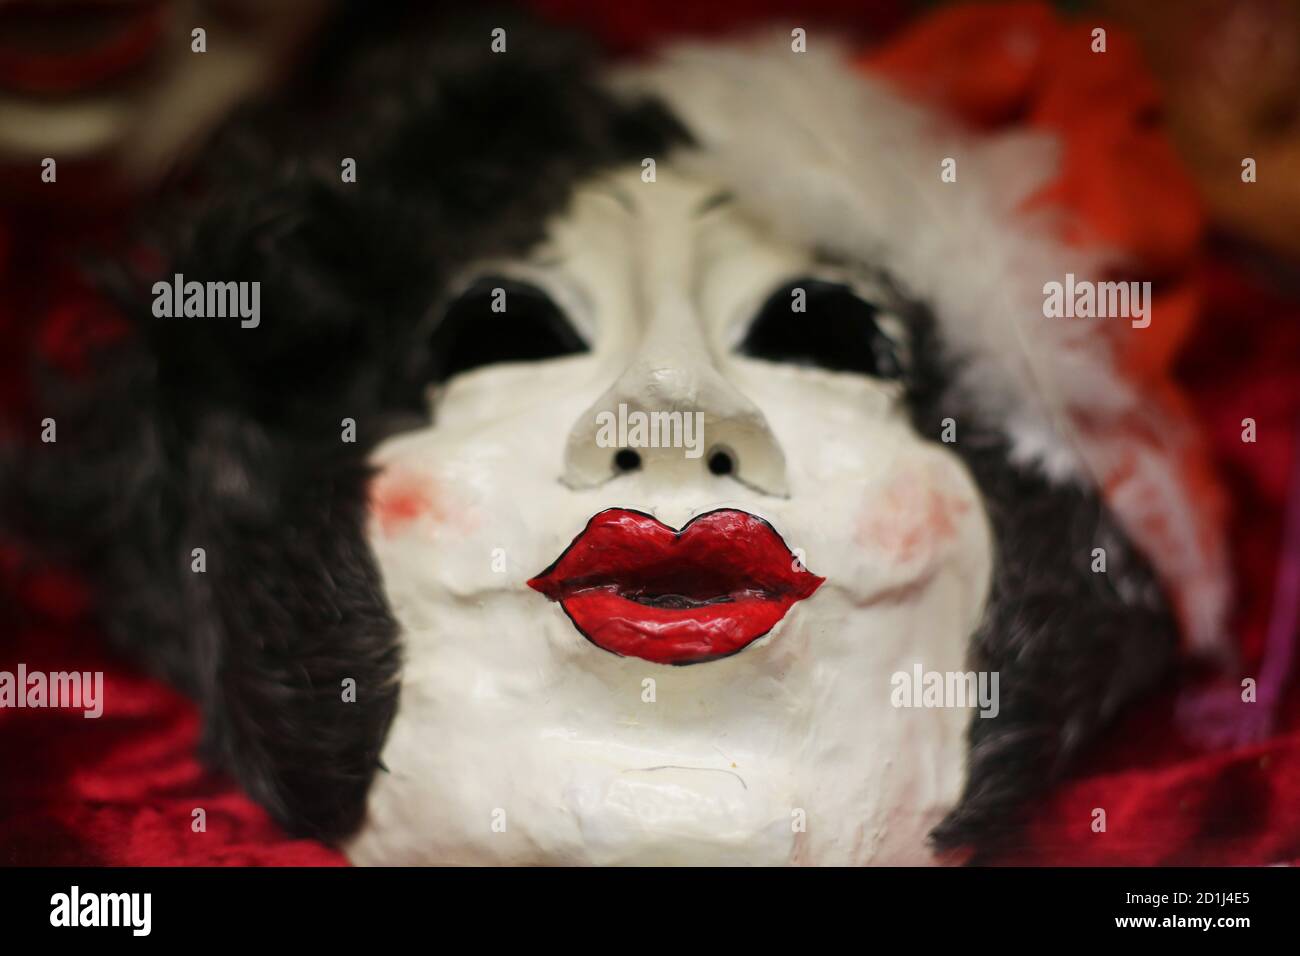 La maschera di una donna con le labbra purizzate. Foto Stock